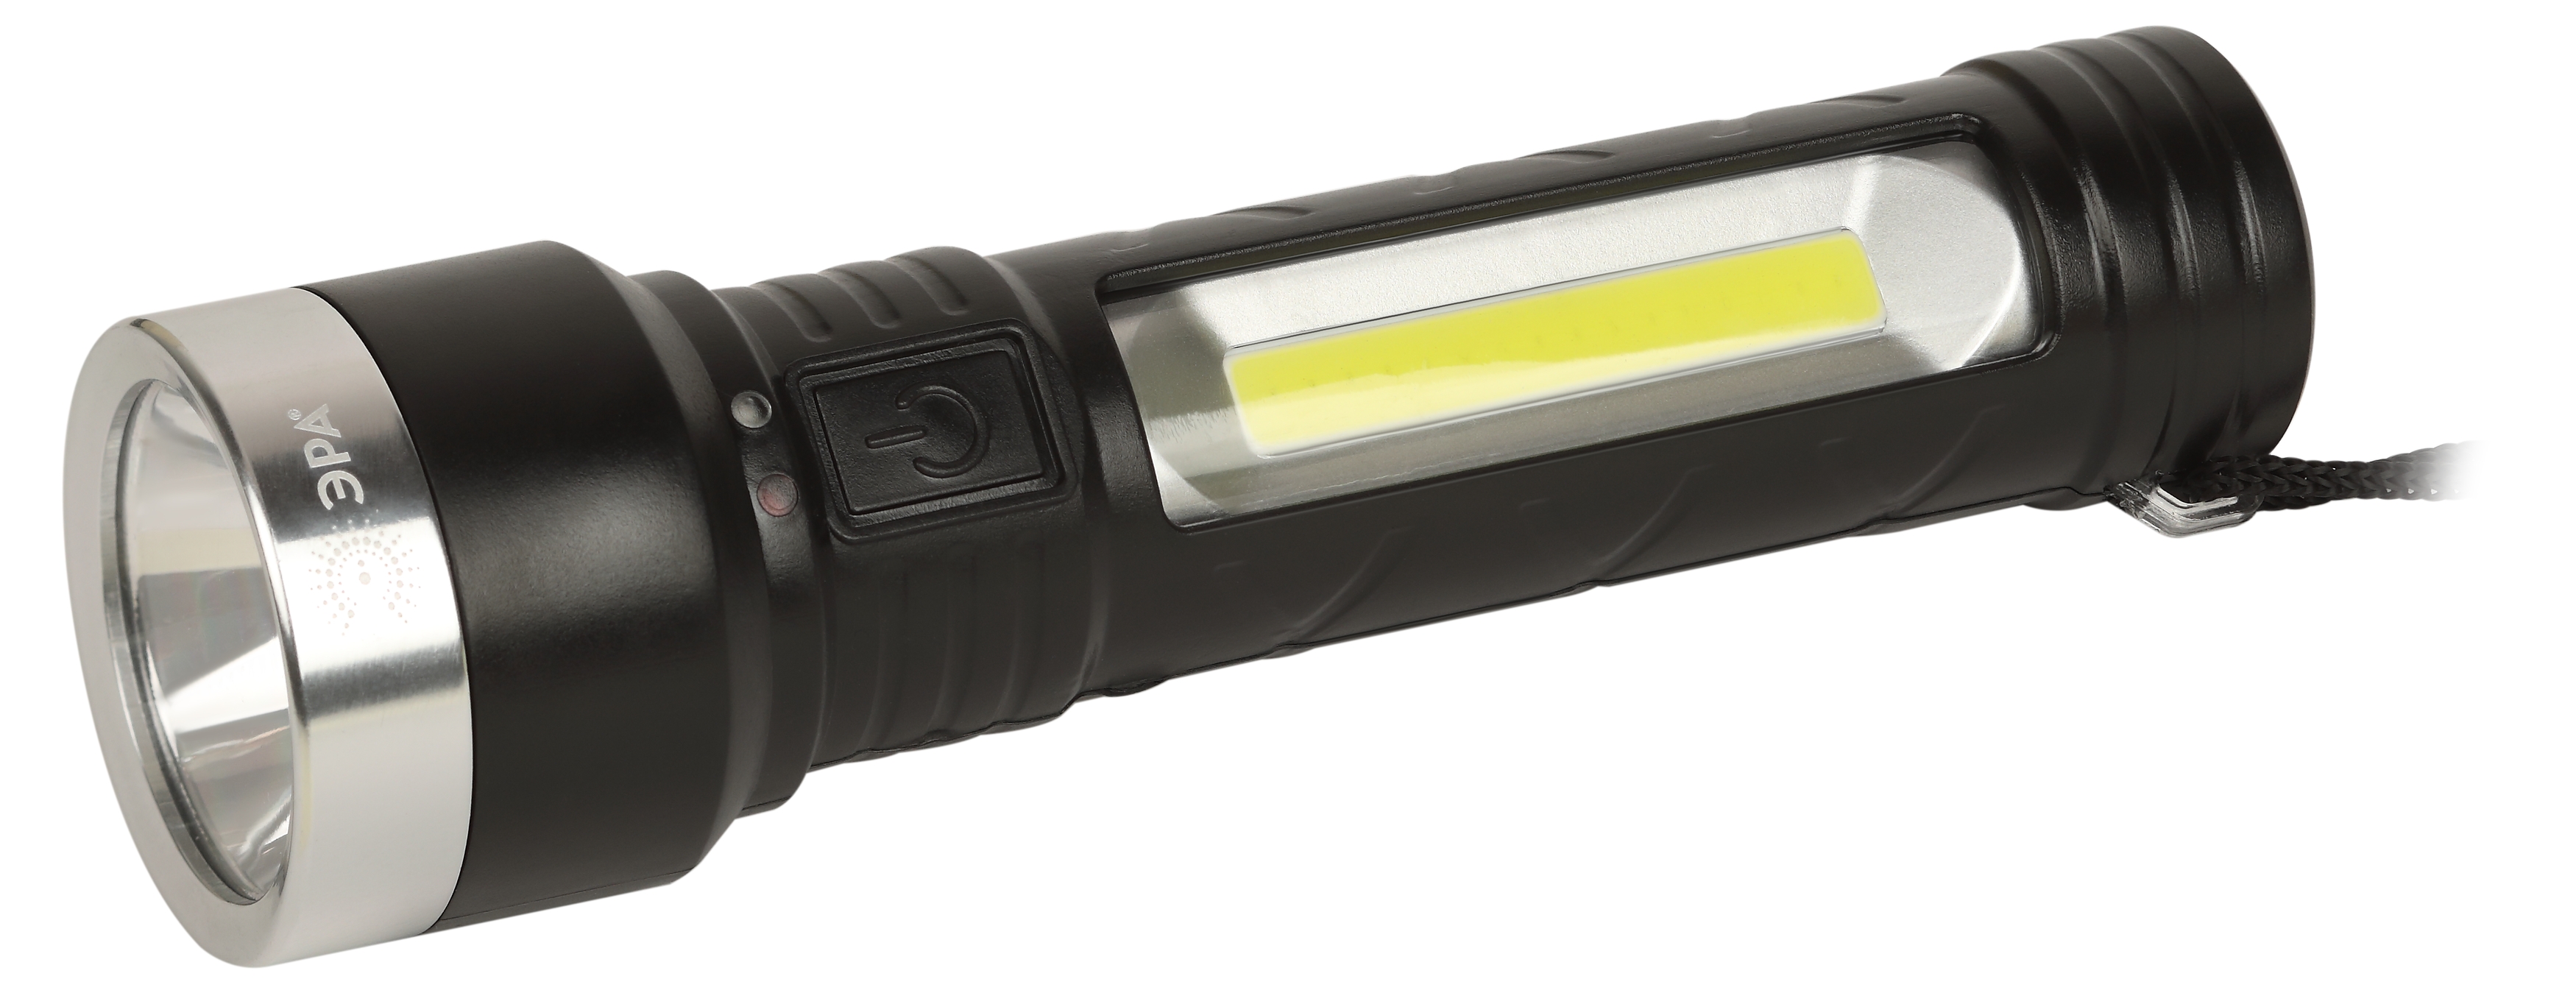 Фонарь ЭРА UA-501 аккумуляторный универсальный COB+LED боковой+фронтальный свет 5 Вт IP44 резина бли